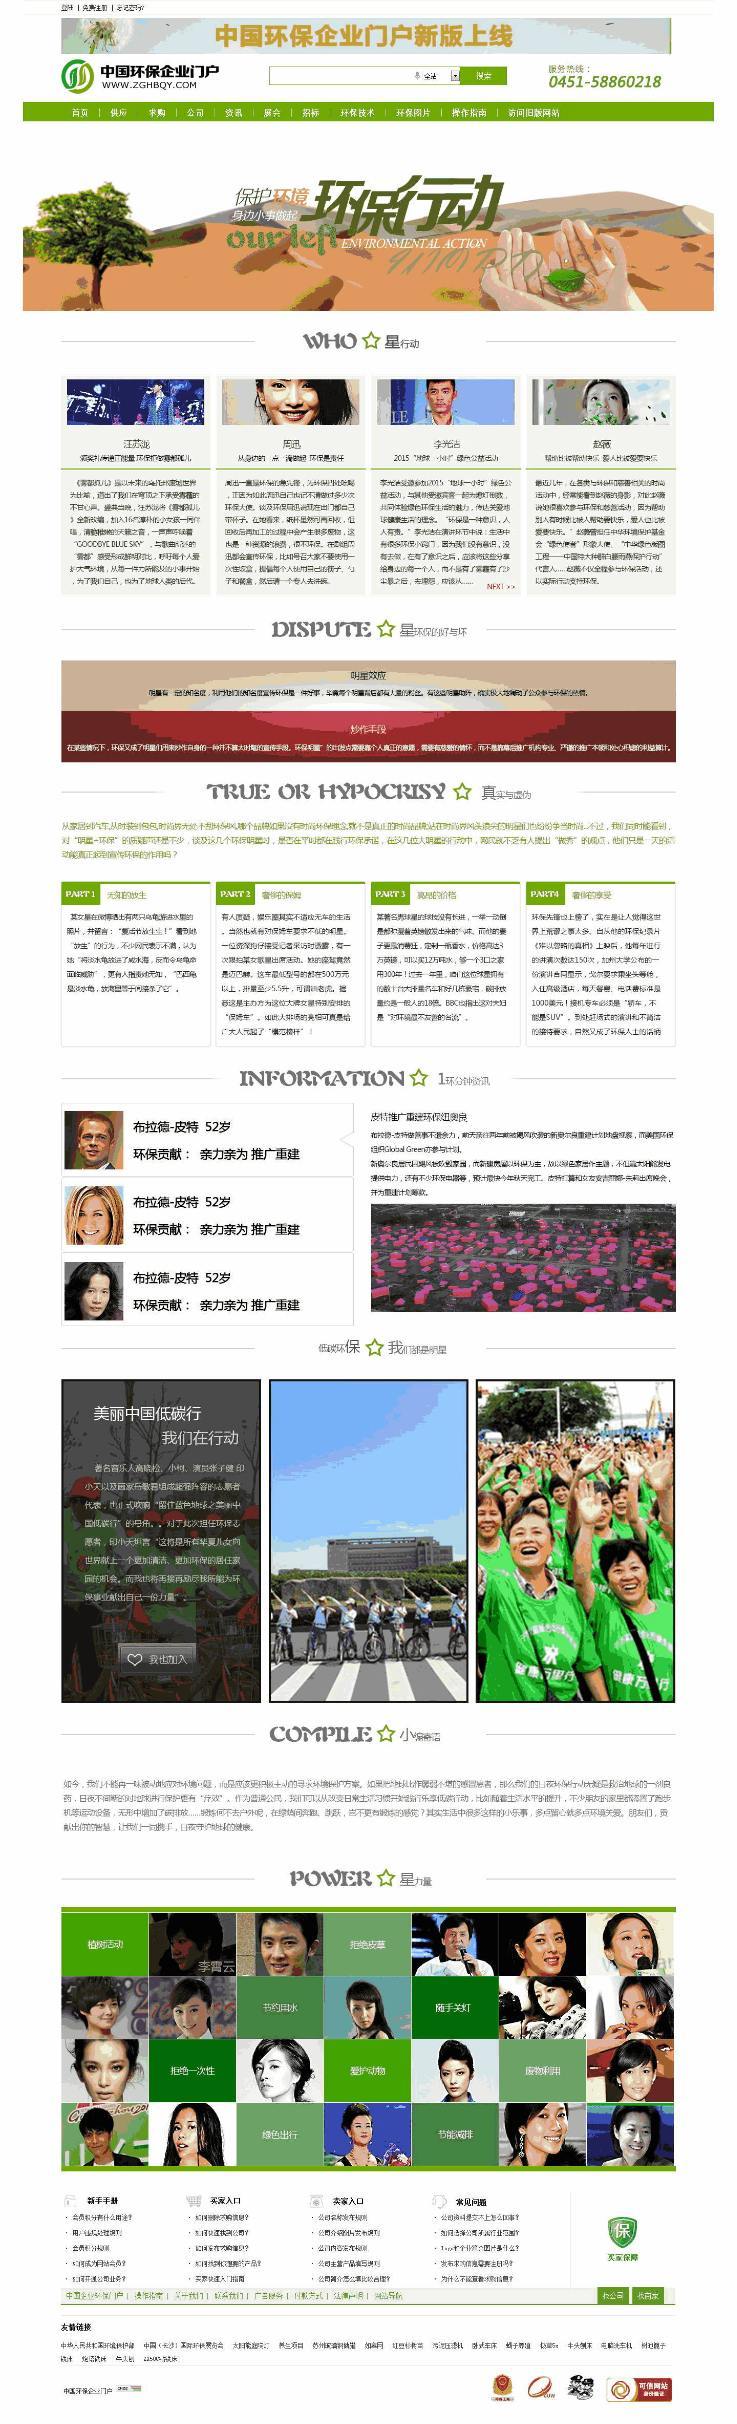 绿色环保公司专题页面网站含手机站WordPress模板下载演示图